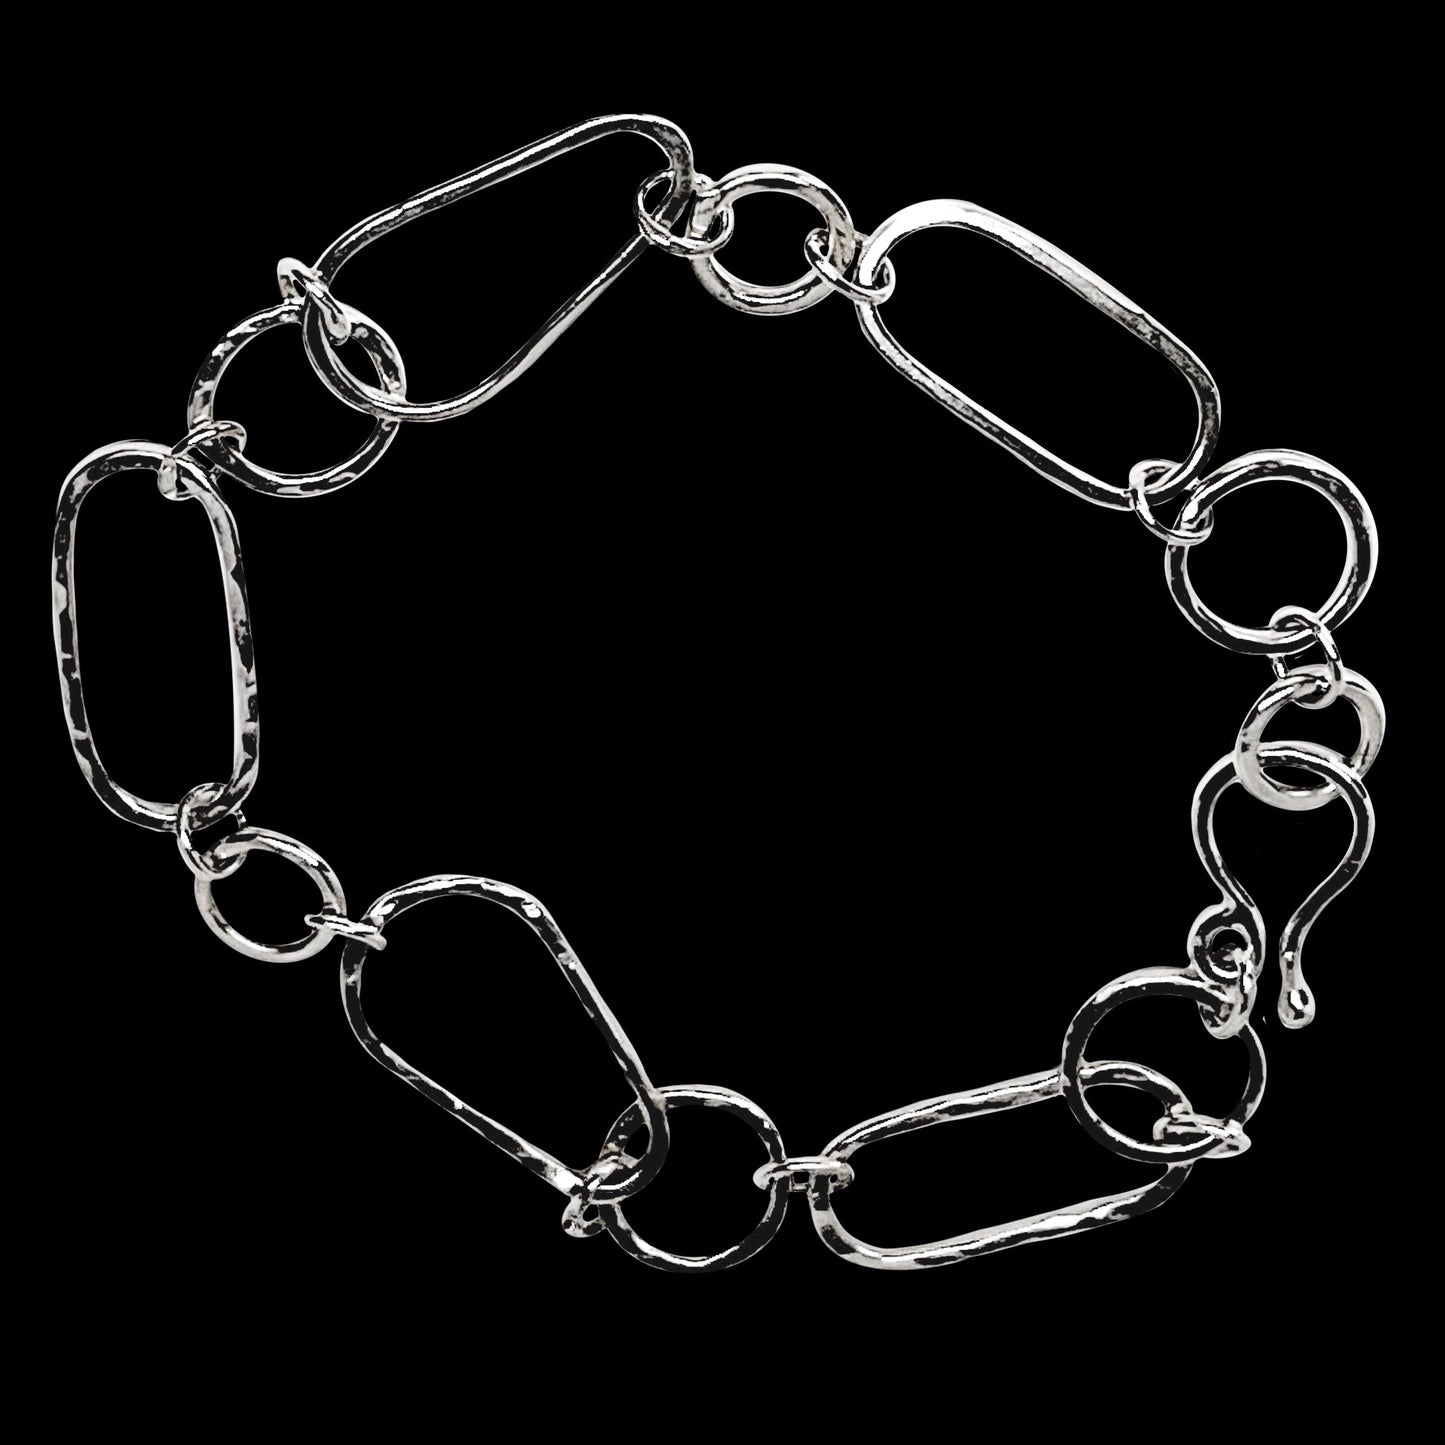 Geometric Sterling Silver Bracelet